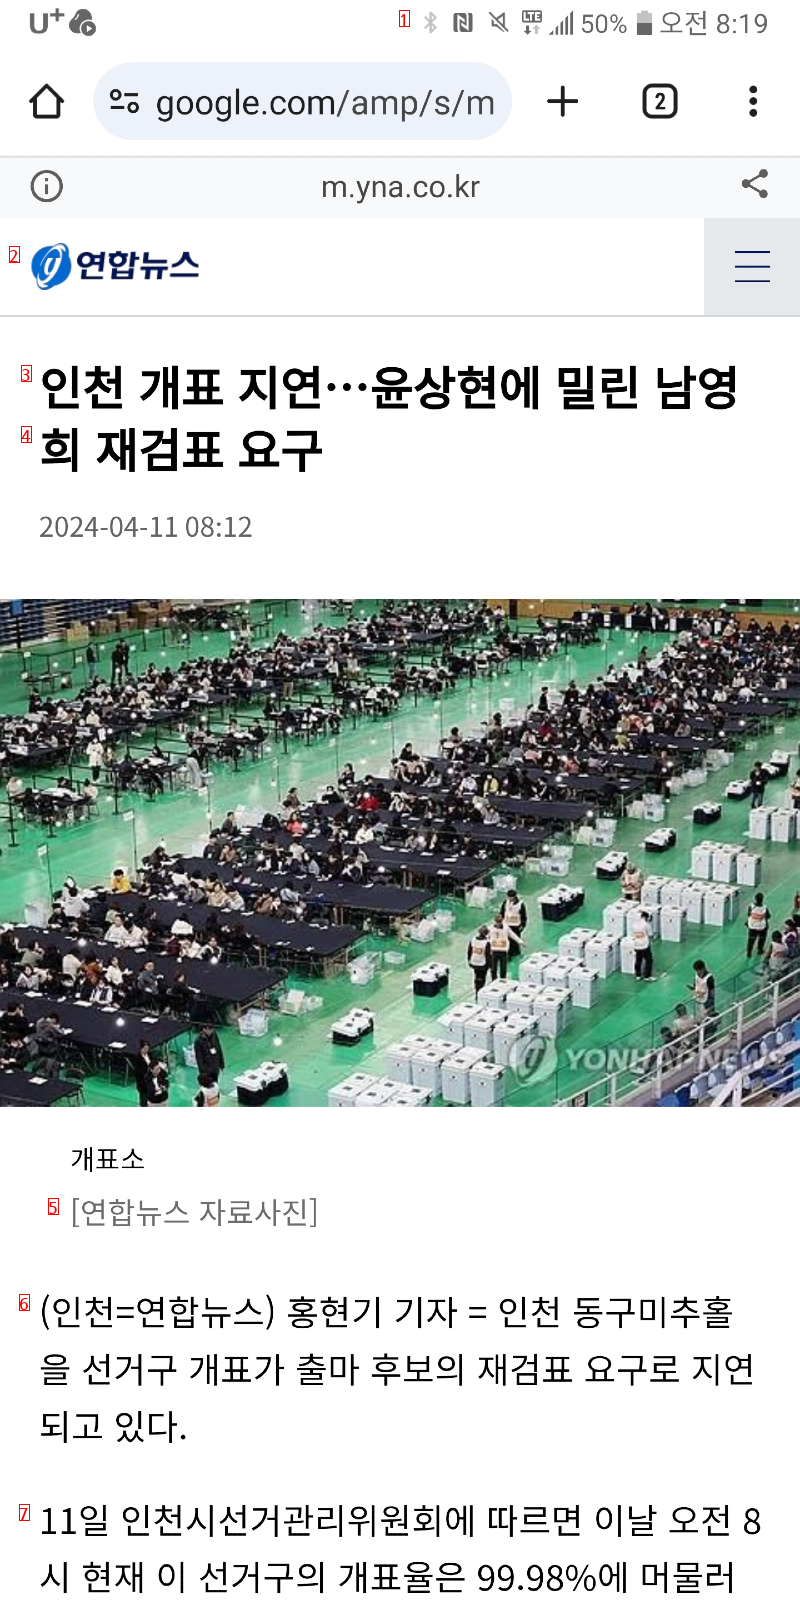 남영희 재검표 뉴스 떳습니다